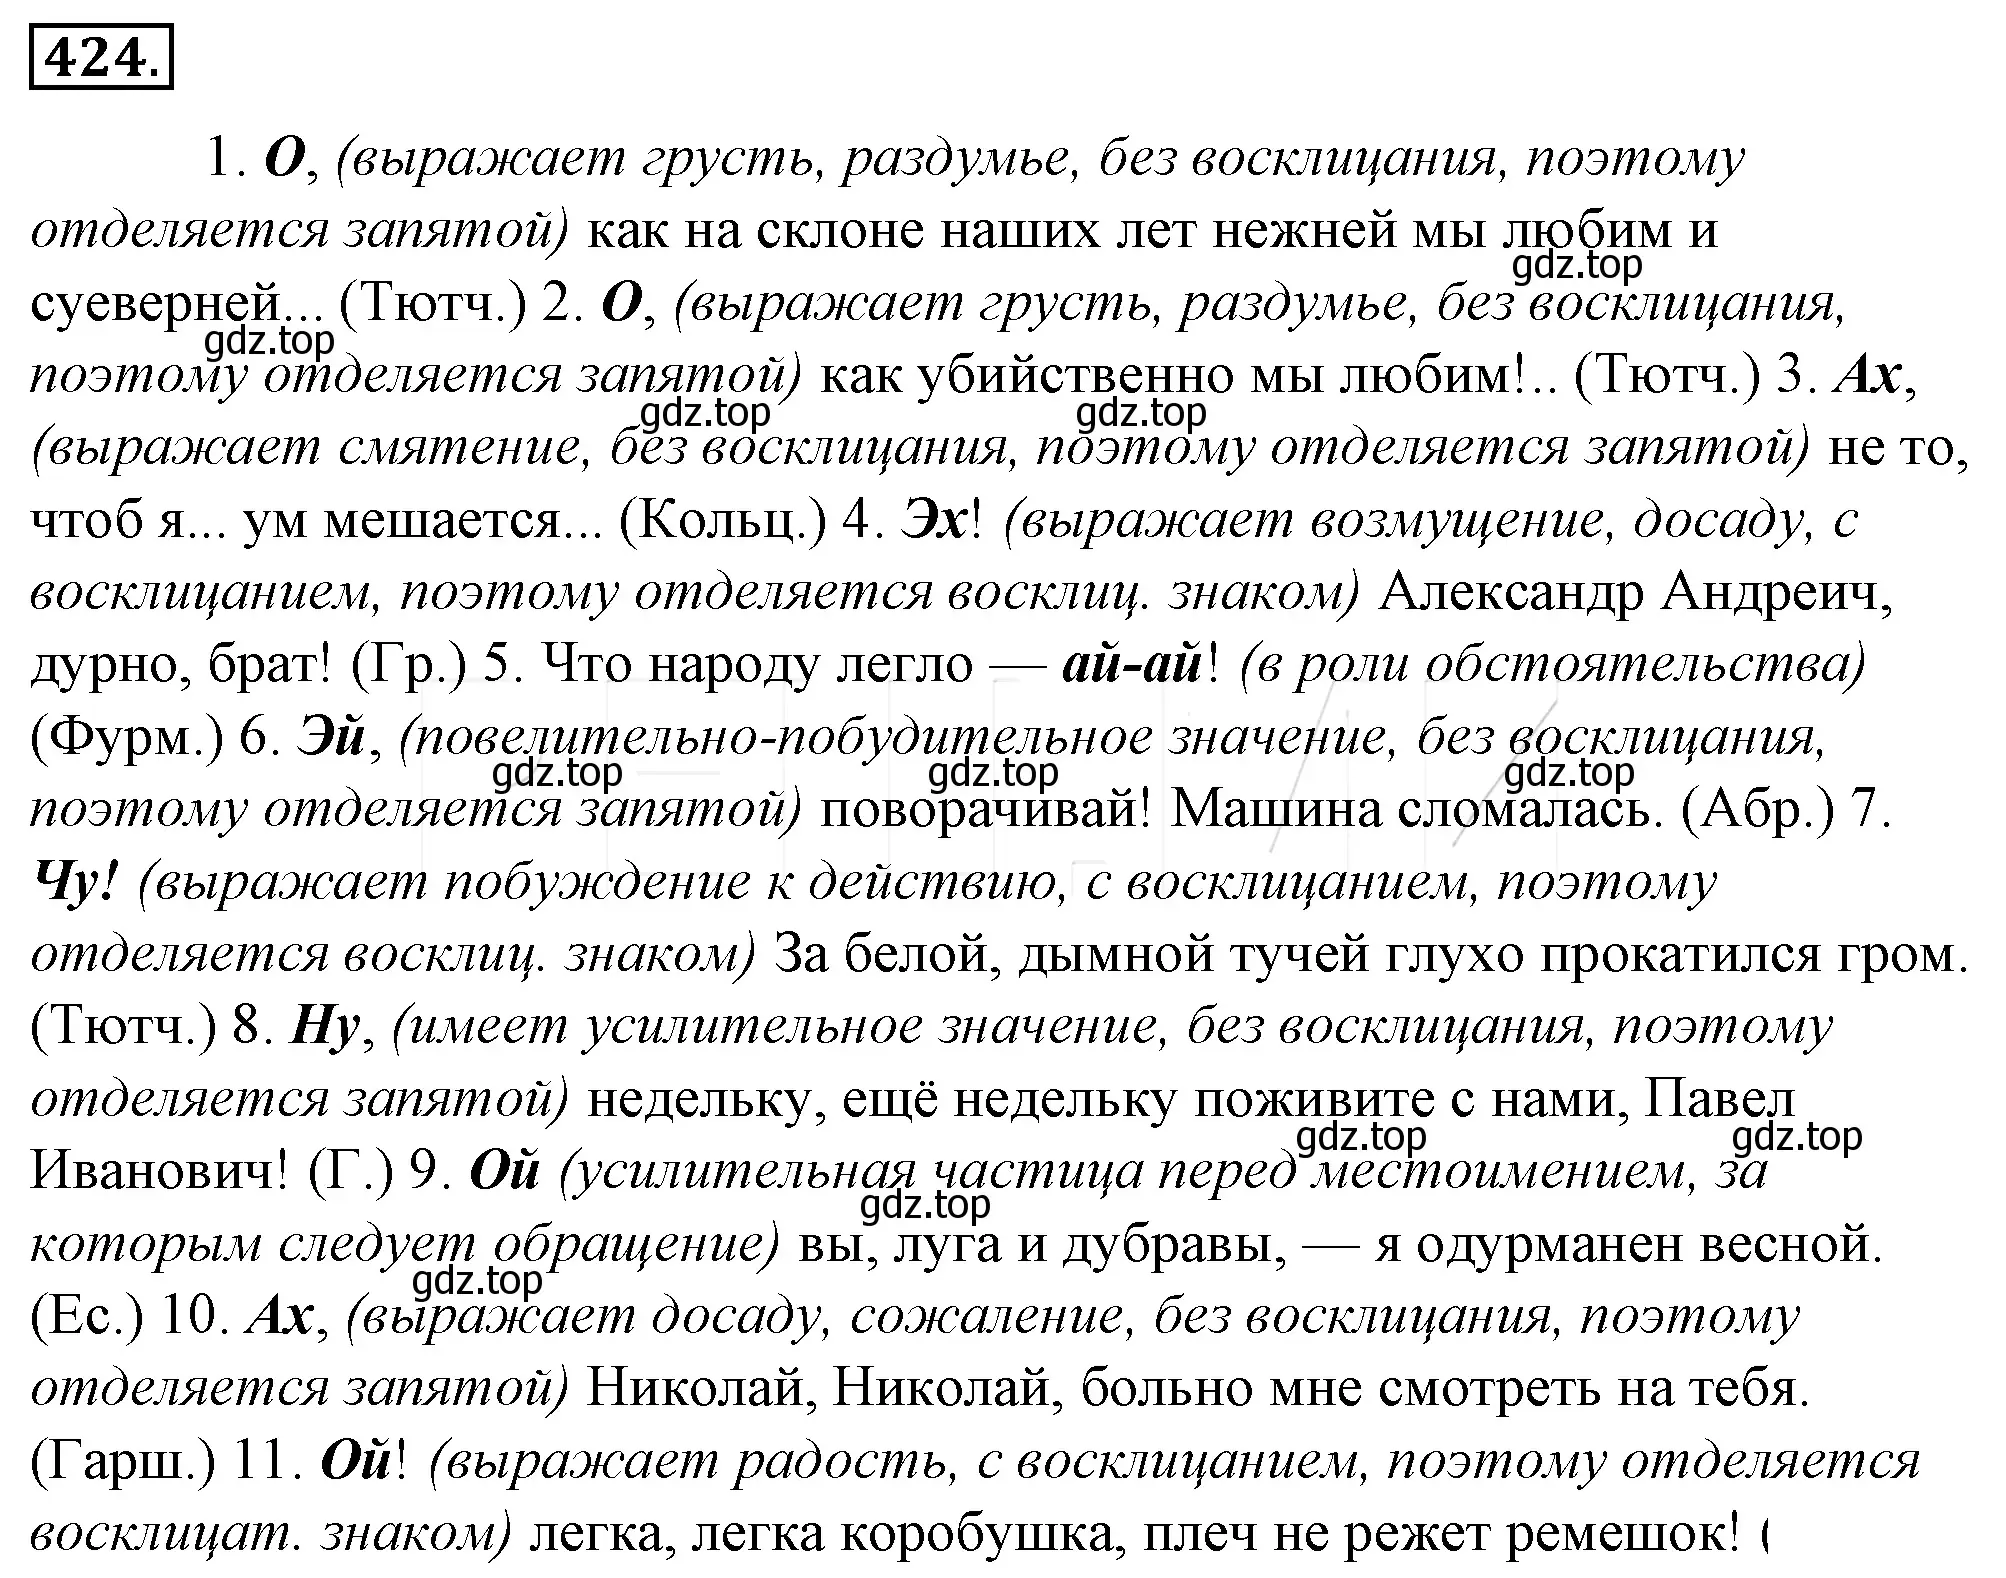 Решение 4. номер 89 (страница 121) гдз по русскому языку 10-11 класс Гольцова, Шамшин, учебник 2 часть